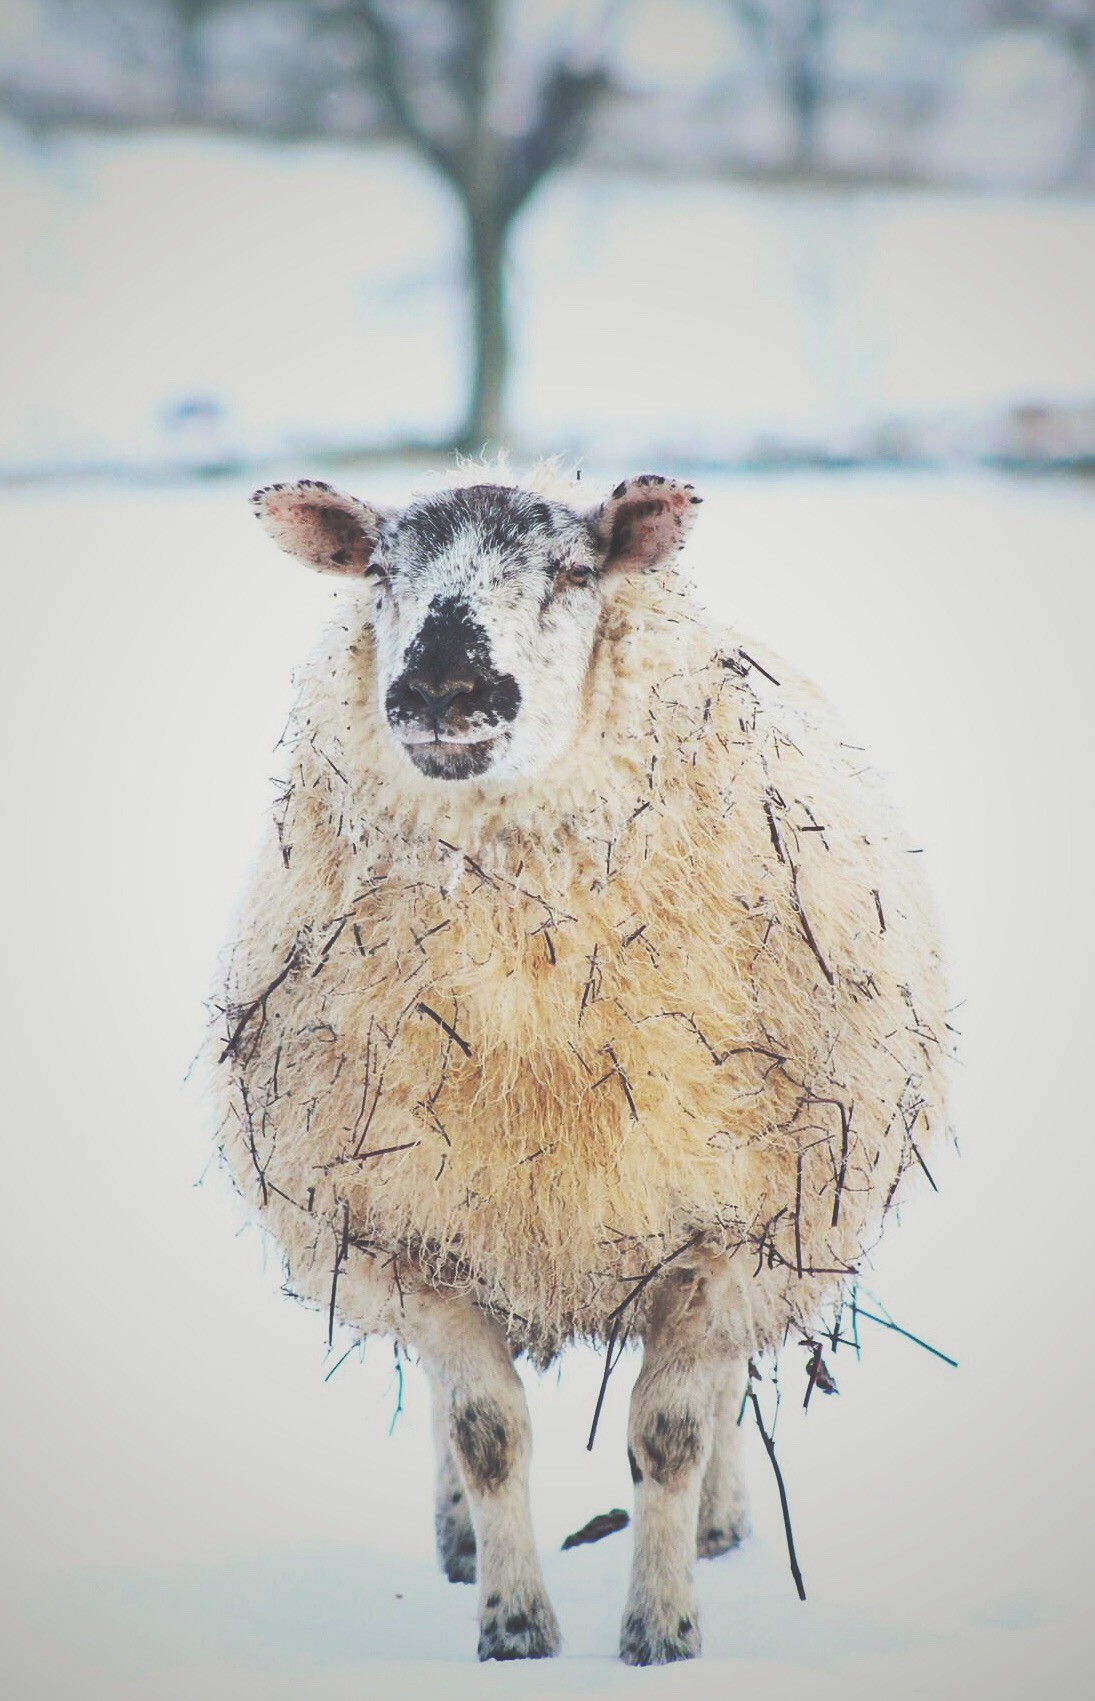 'Sticky' sheep of Gleneagles @kristyashton